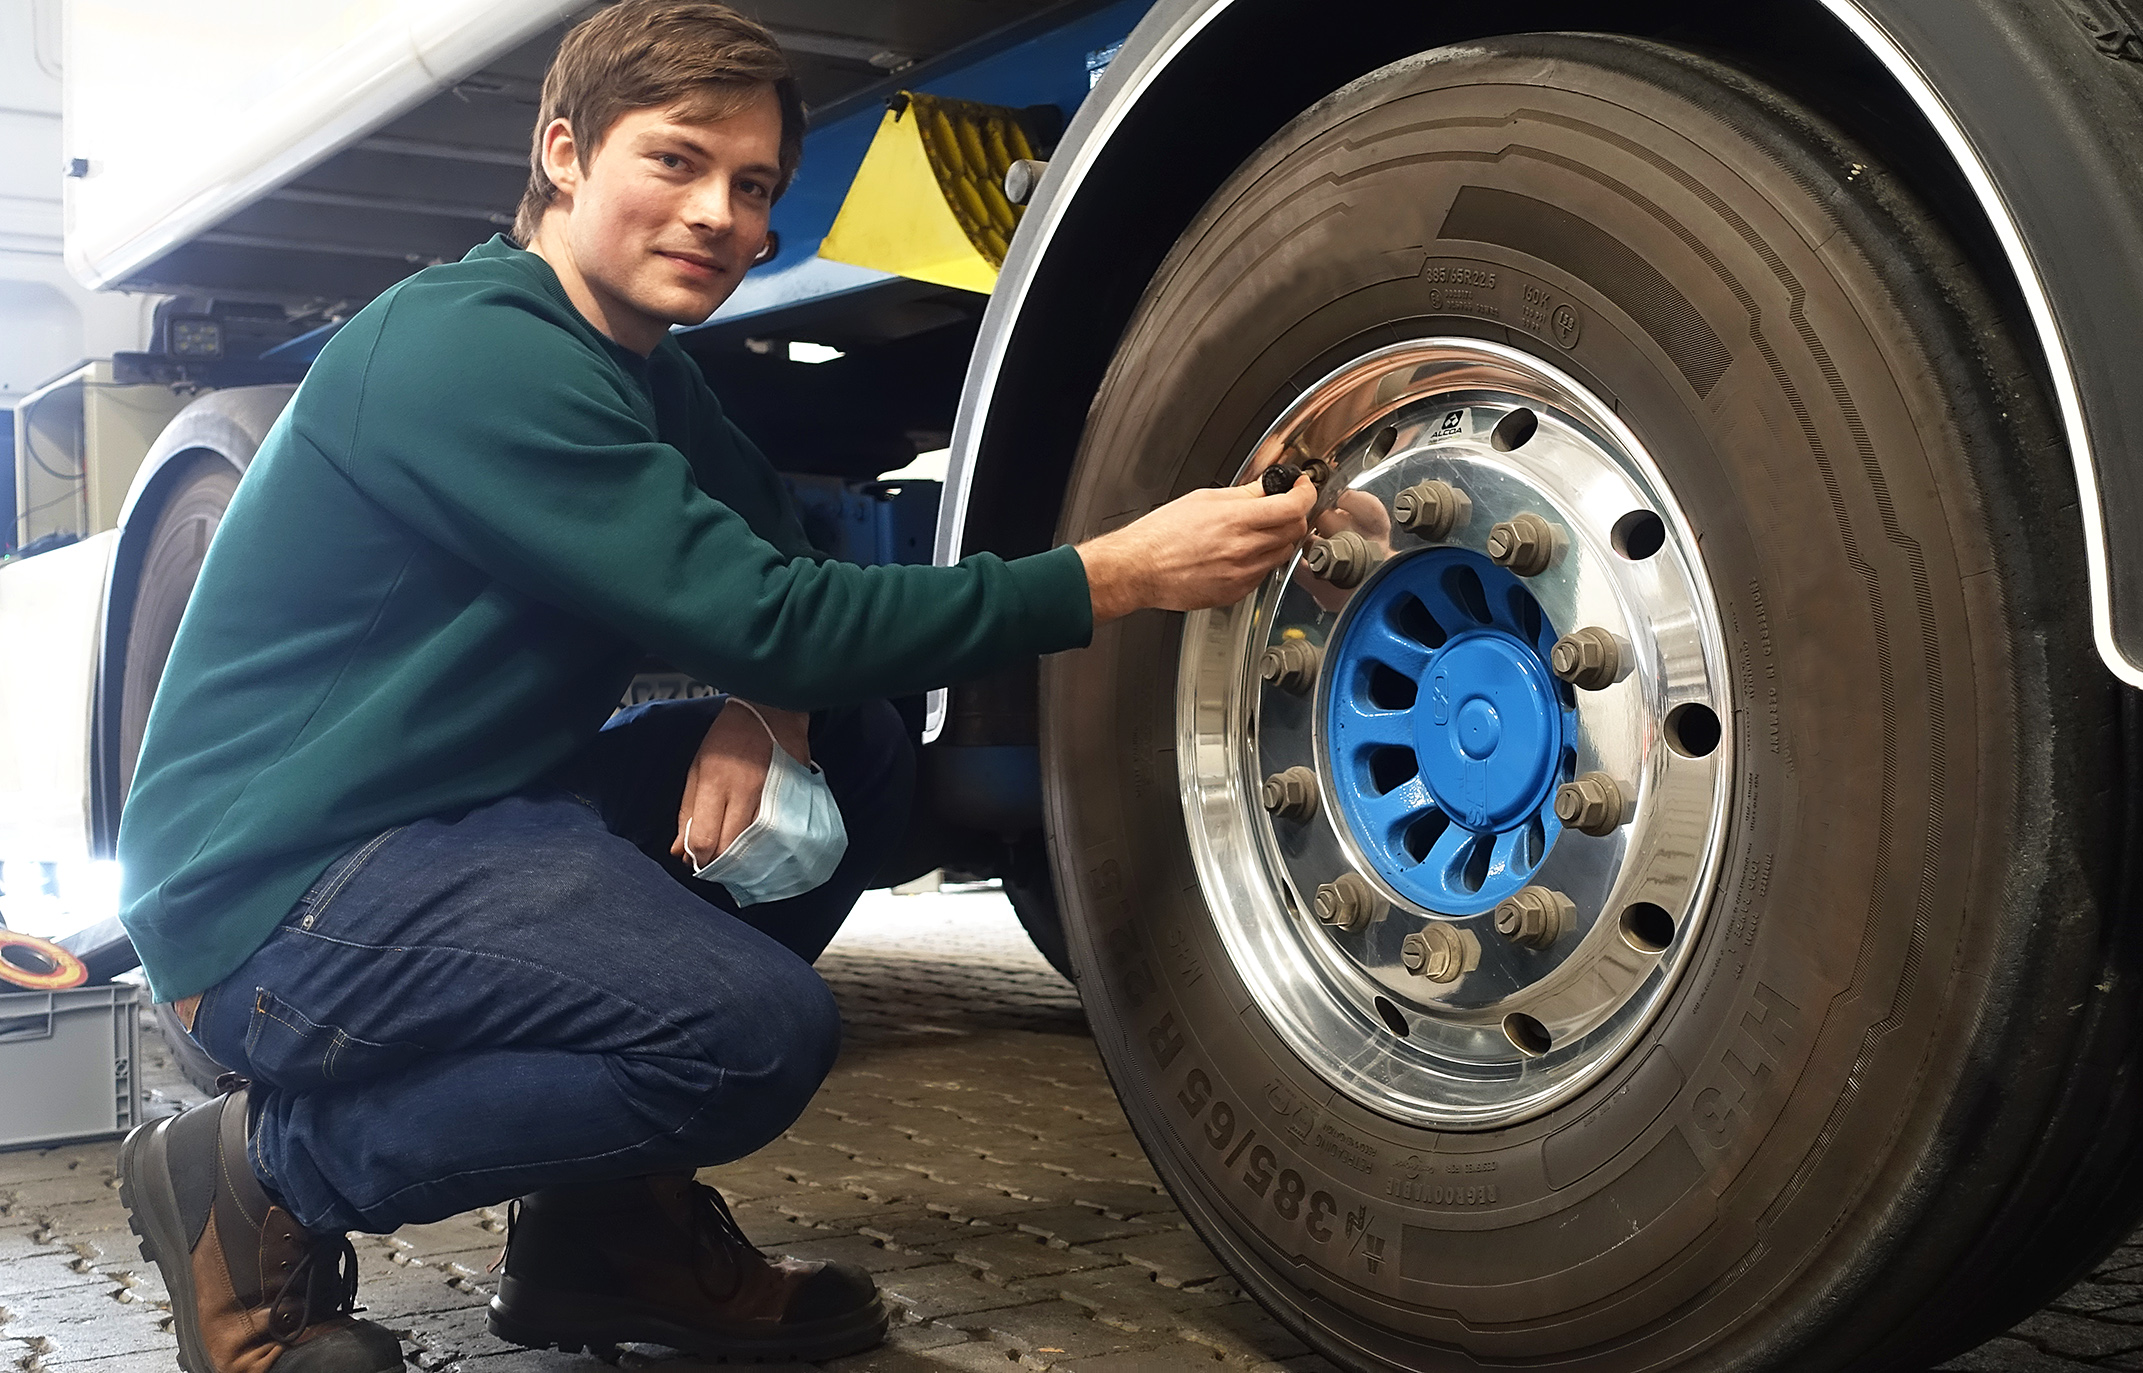 Für das Projekt CargoTrailSense hat Marius Jones, wissenschaftlicher Mitarbeiter am Fachbereich Maschinenbau der FH Dortmund, Lkw mit zahlreichen Sensoren ausgestattet